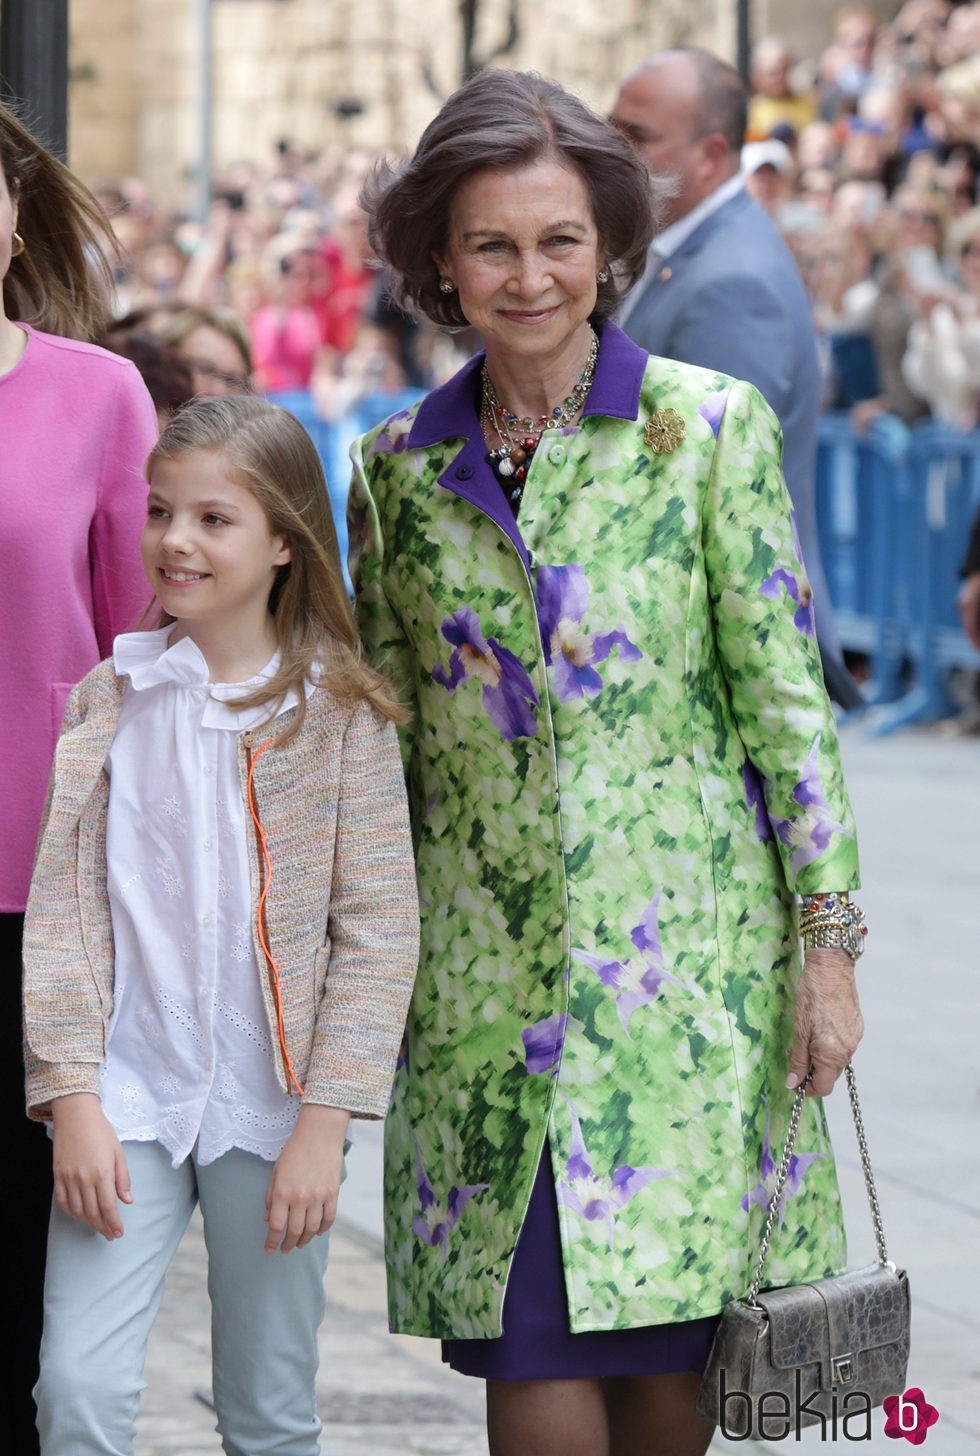 La Reina Sofía con la Infanta Sofía en la Misa de Pascua 2016